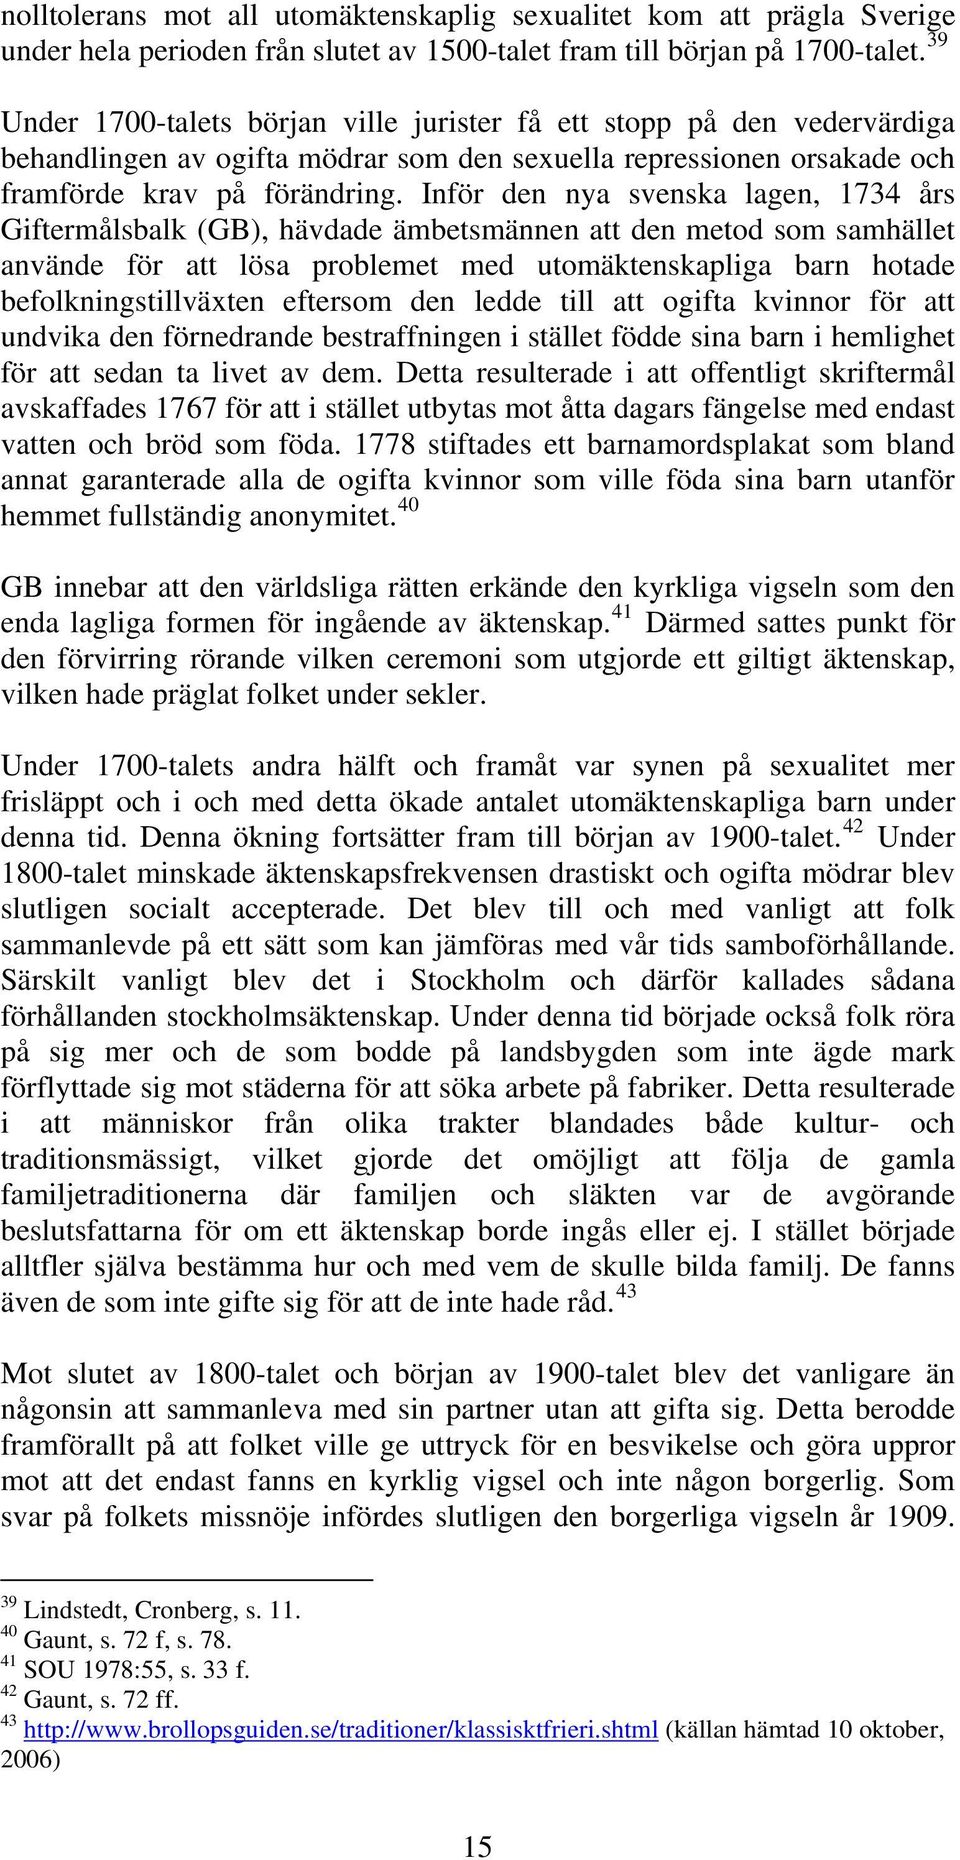 Inför den nya svenska lagen, 1734 års Giftermålsbalk (GB), hävdade ämbetsmännen att den metod som samhället använde för att lösa problemet med utomäktenskapliga barn hotade befolkningstillväxten